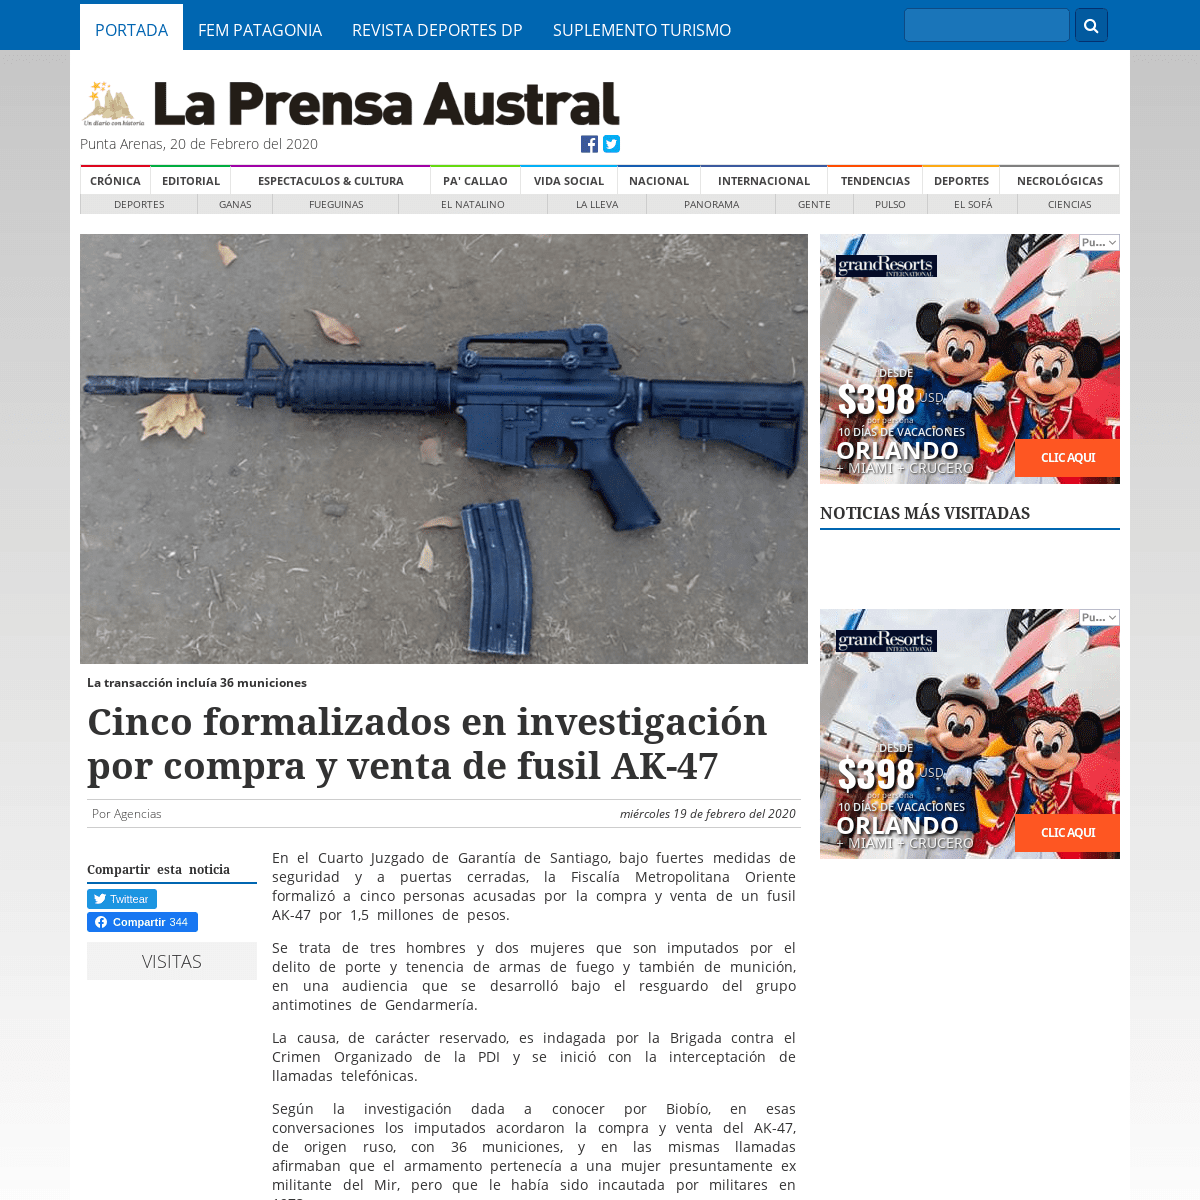 A complete backup of laprensaaustral.cl/nacional/cinco-formalizados-en-investigacion-por-compra-y-venta-de-fusil-ak-47/